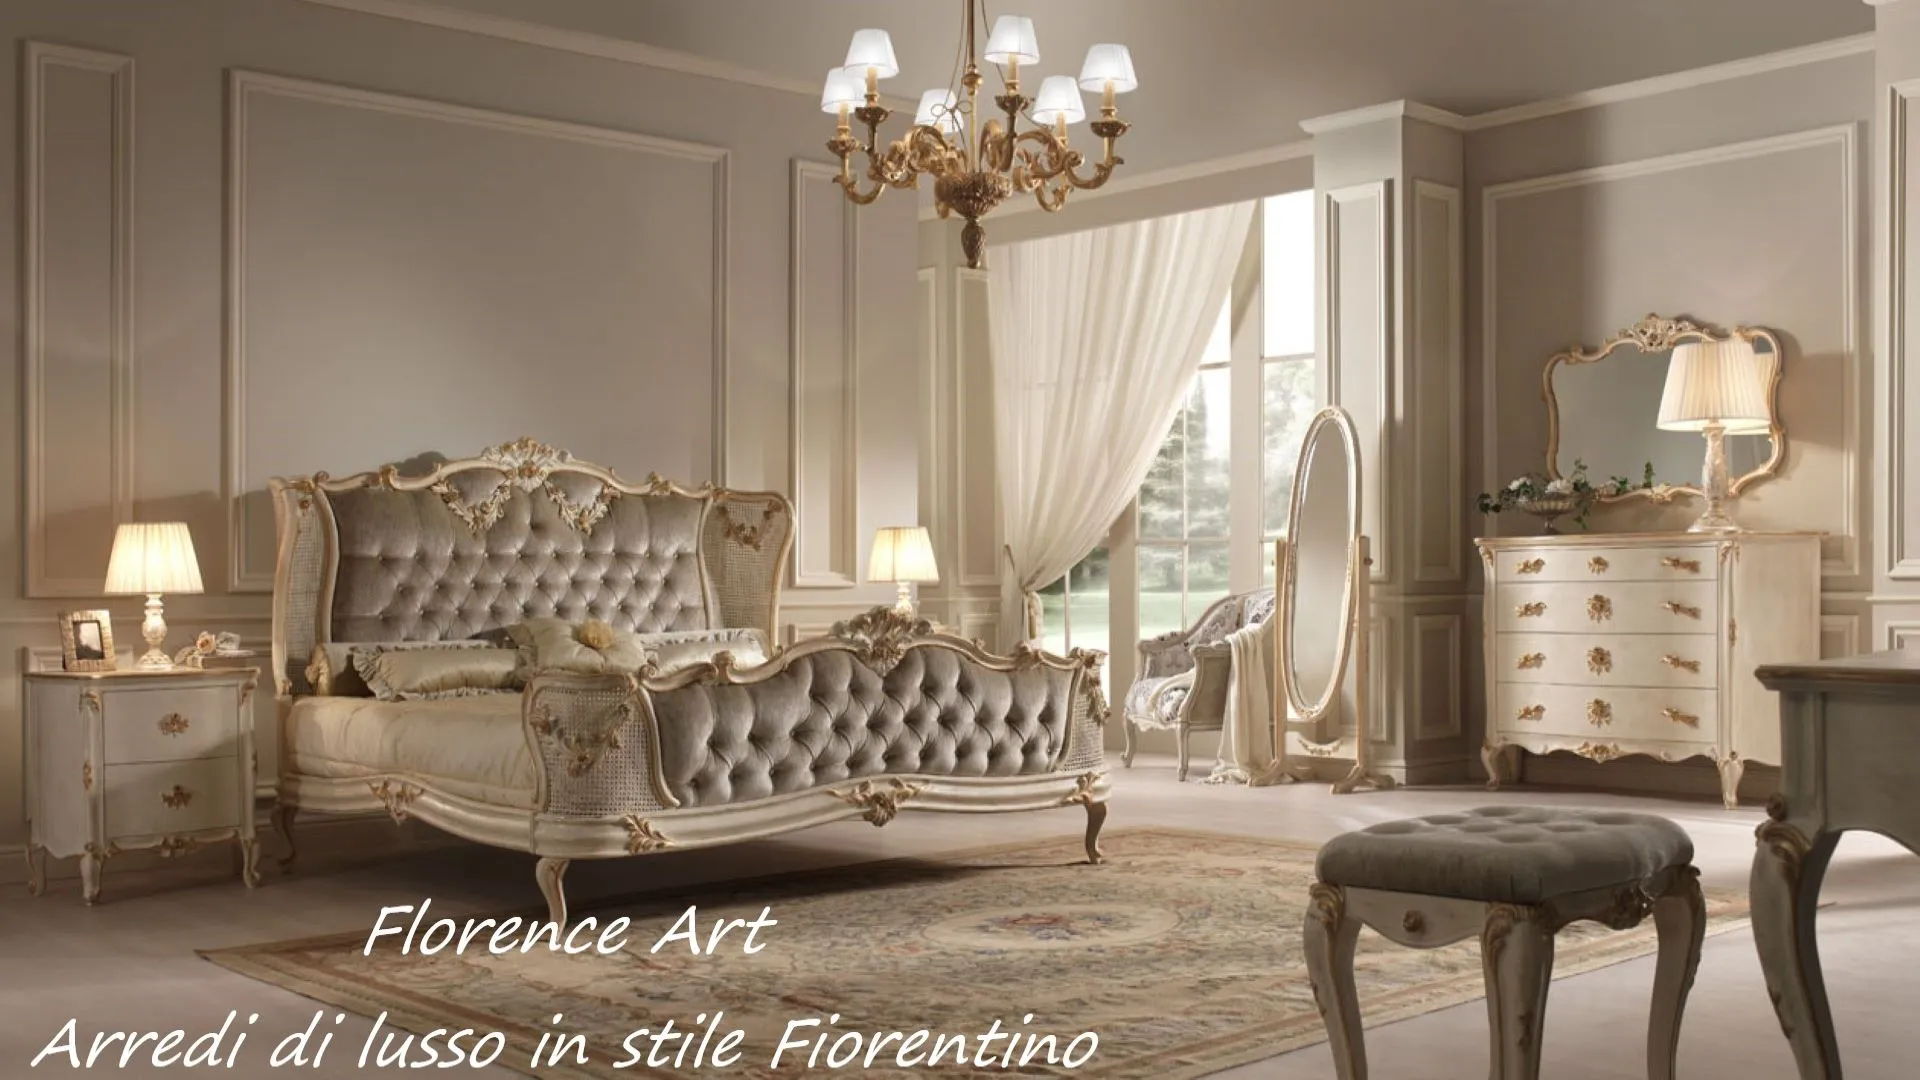 Florence Art - Arredamenti di lusso in stile Fiorentino